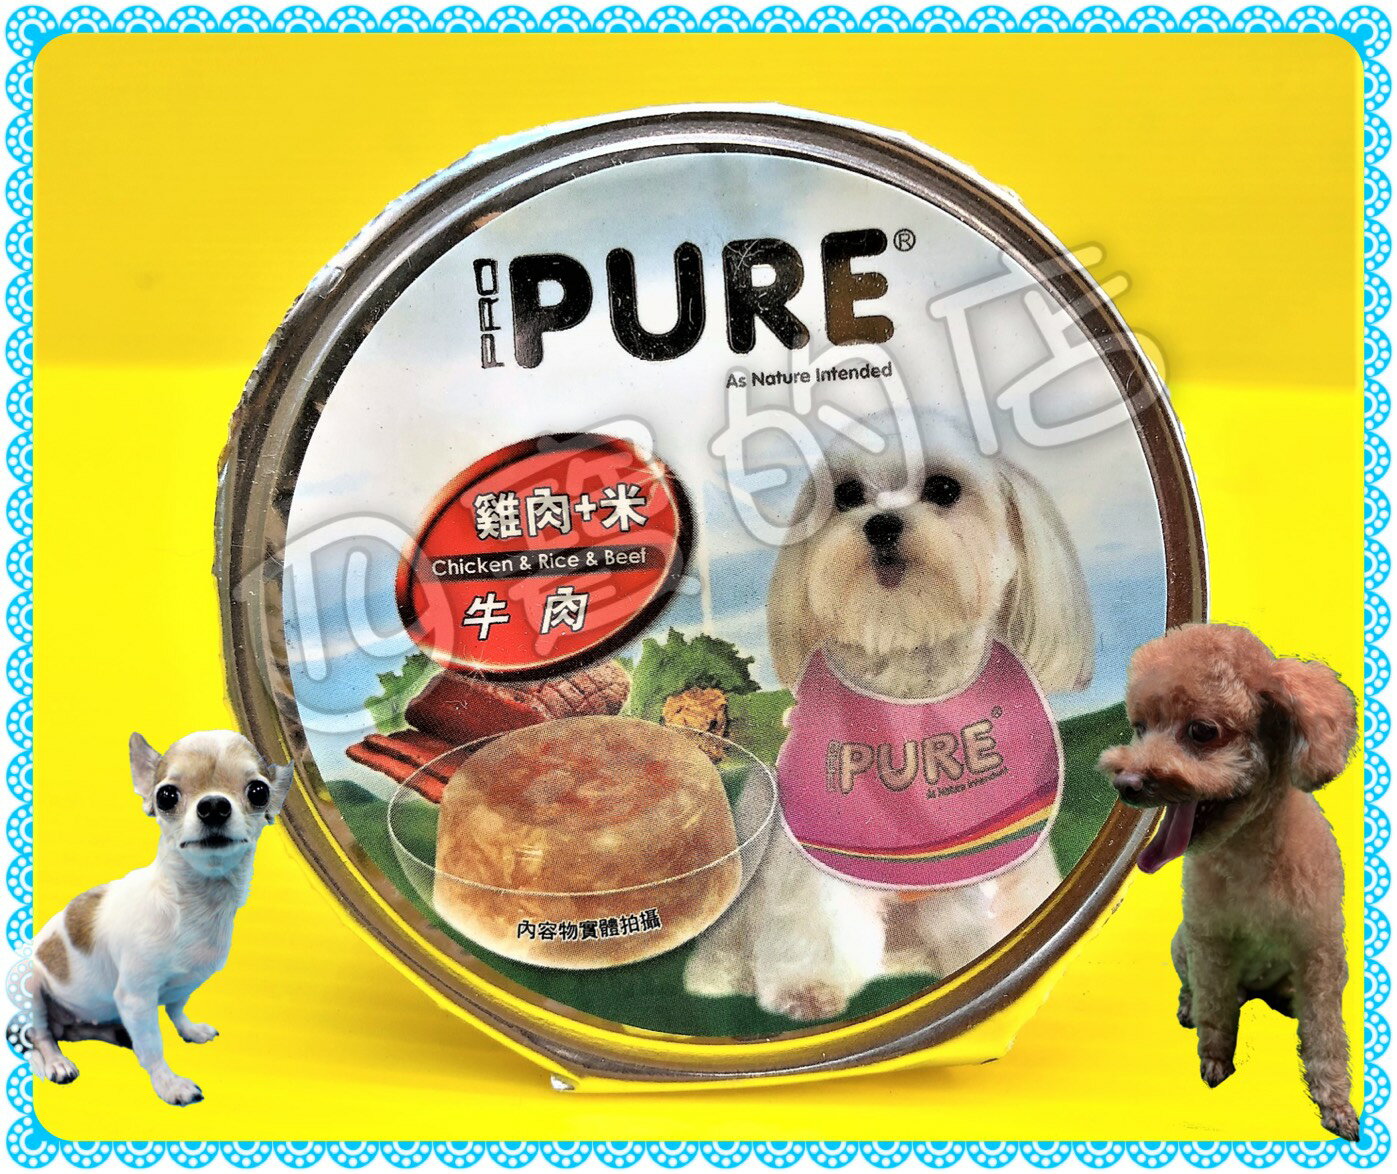 ✪四寶的店n✪猋➤(牛肉)雞肉+米+牛肉 80g/罐➤六種口味 PURE PUREP 巧鮮杯 猋 犬 罐頭 狗 餐盒 鋁箔杯